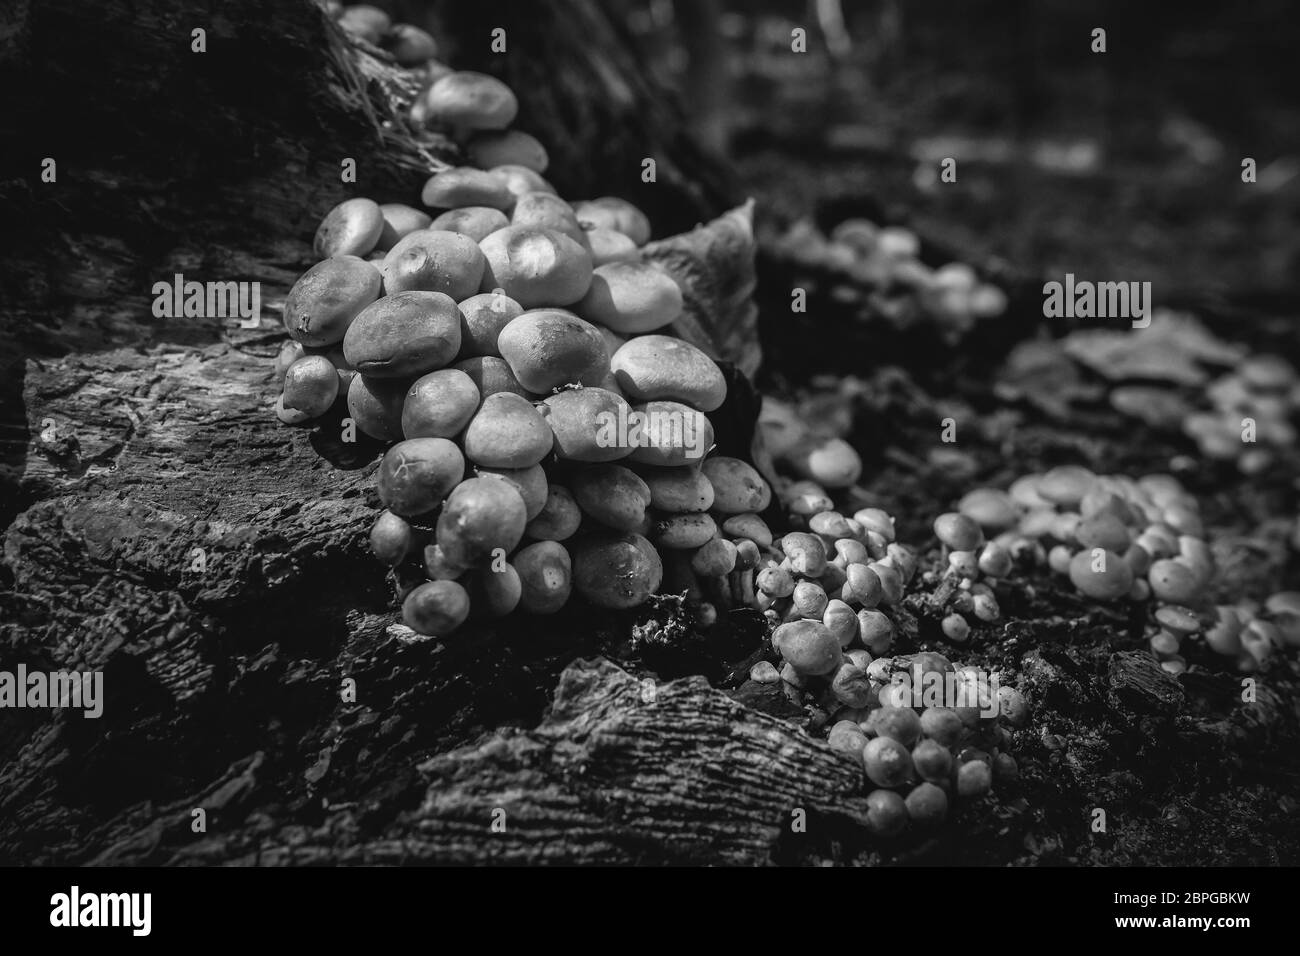 Aufnahme von Grünblättrigen Schwefelköpfe auf Totholz - zum Thema Mykologie - Detailaufnahme - in schwarz weiß Stockfoto